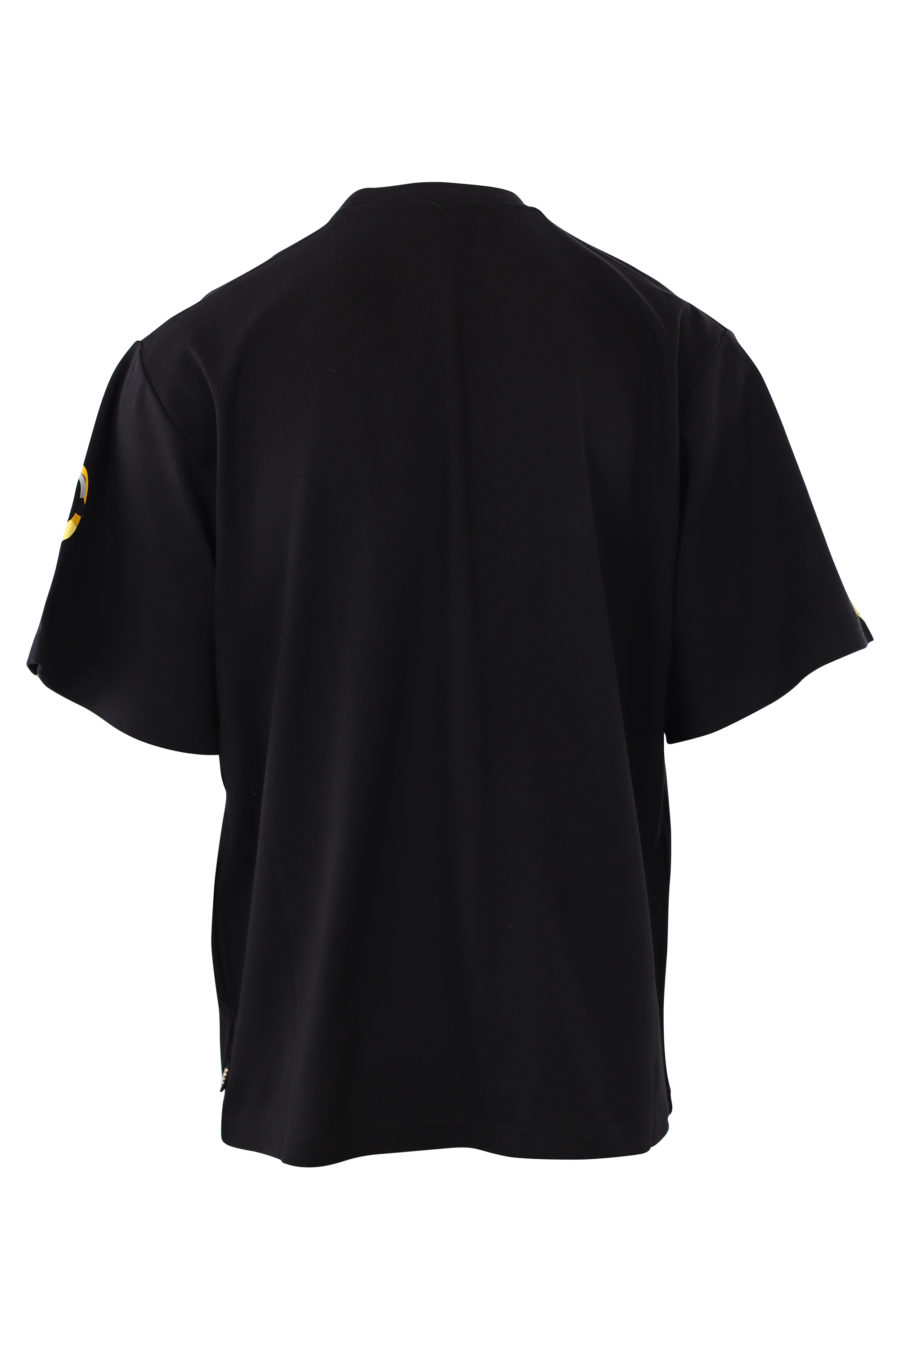 Camiseta negra con logo camuflado amarillo - IMG 2042